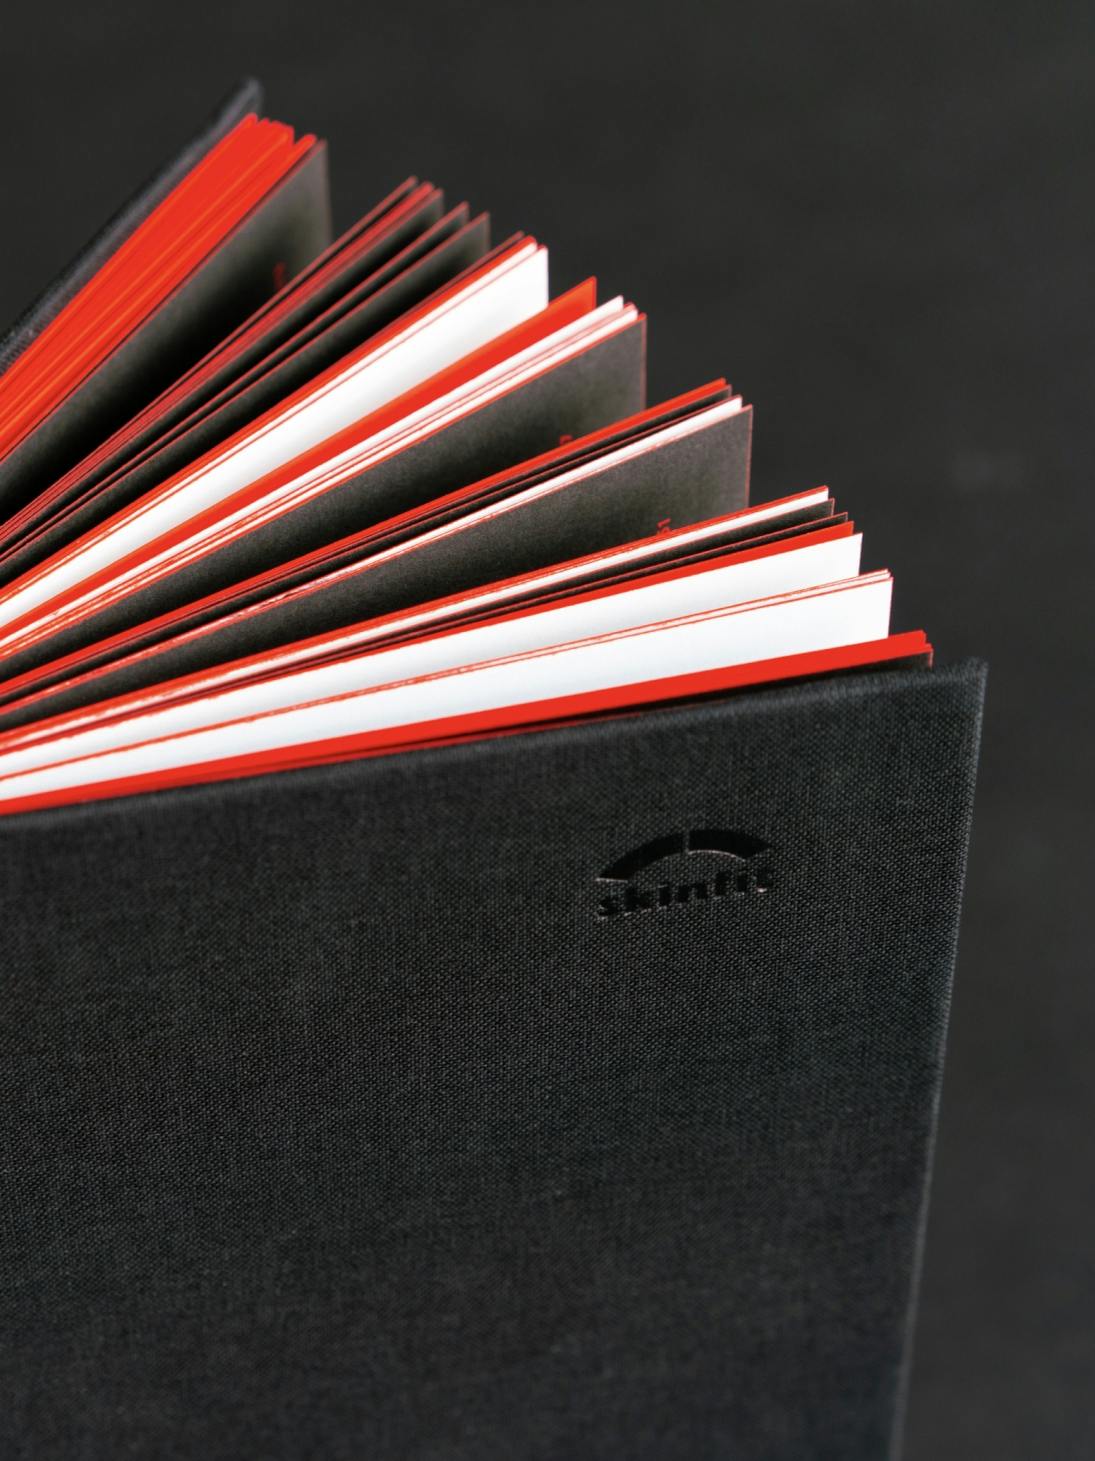 Detailansicht des Umschlags vom skinfit brand book, schwarzer Leinenumschlag mit Blindprägung und roter Farbschnitt © gm gobiq